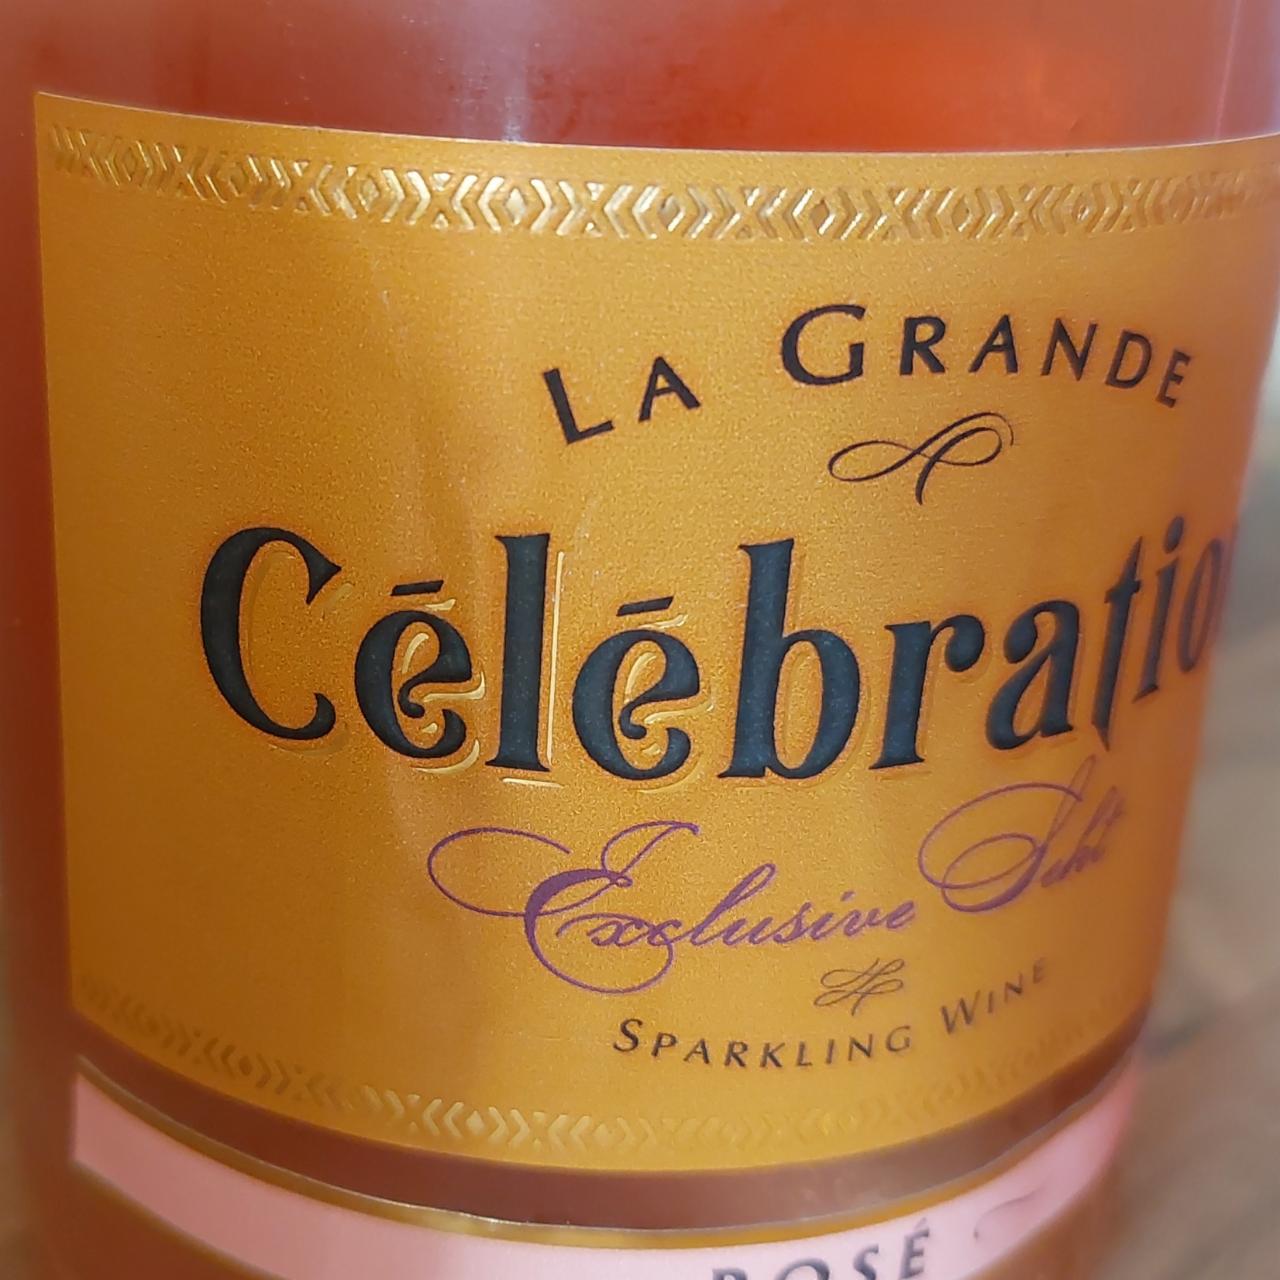 Fotografie - Cēlēbration Sparkling Wine Rosé La Grande